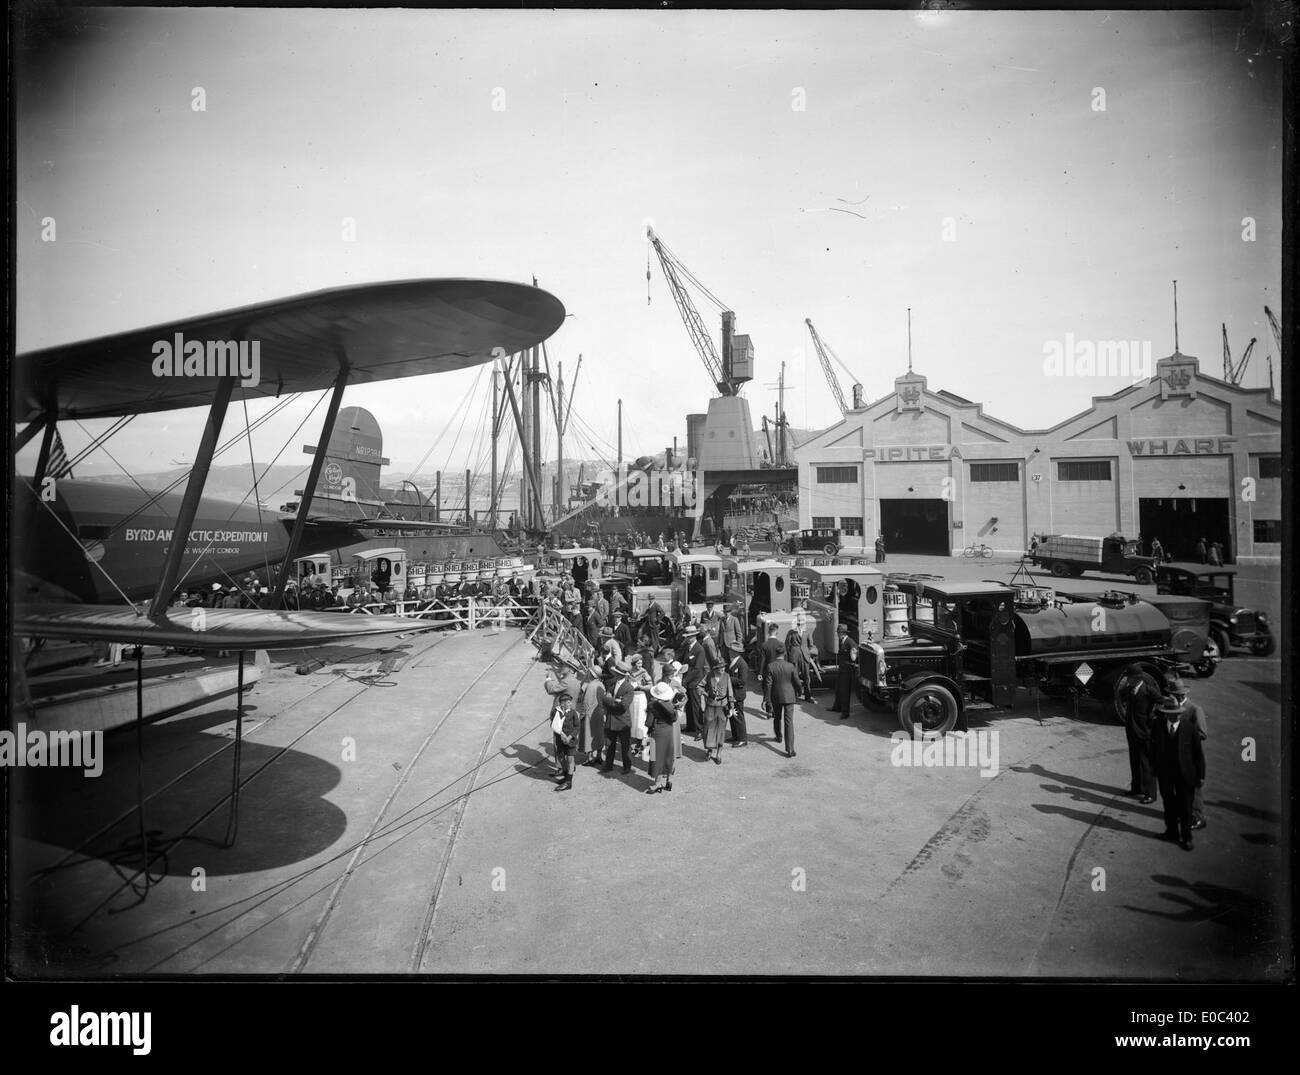 Laden liefert für die zweite Antarktis-Expedition von Byrd, Pipitea Wharf, Wellington, 1933 Stockfoto